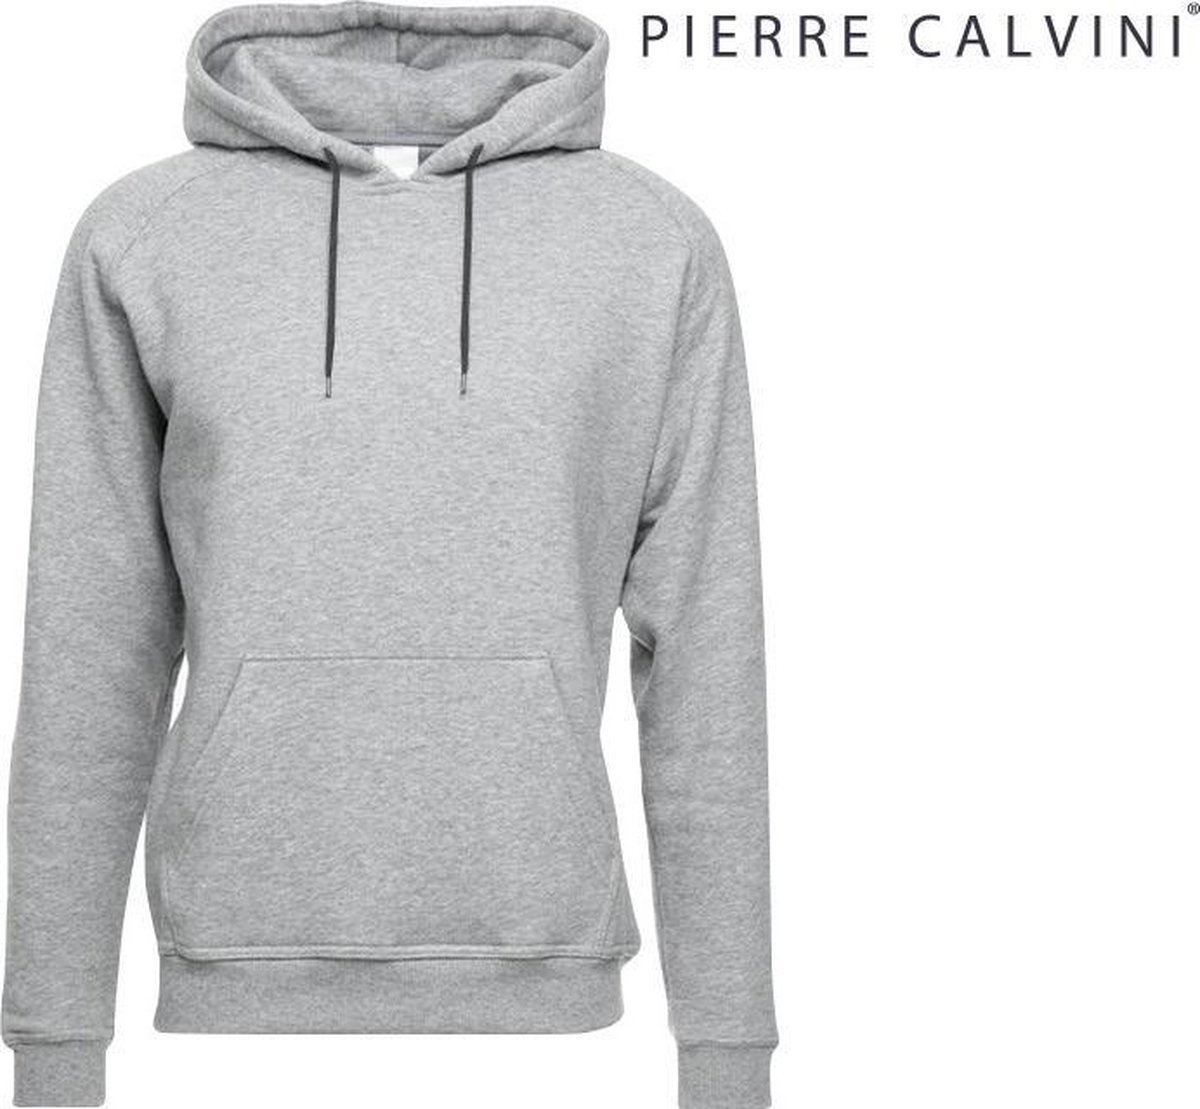 Pierre Calvini - Hoodie Heren Trui - Sweater Heren Met Capuchon - Grijs - XXL